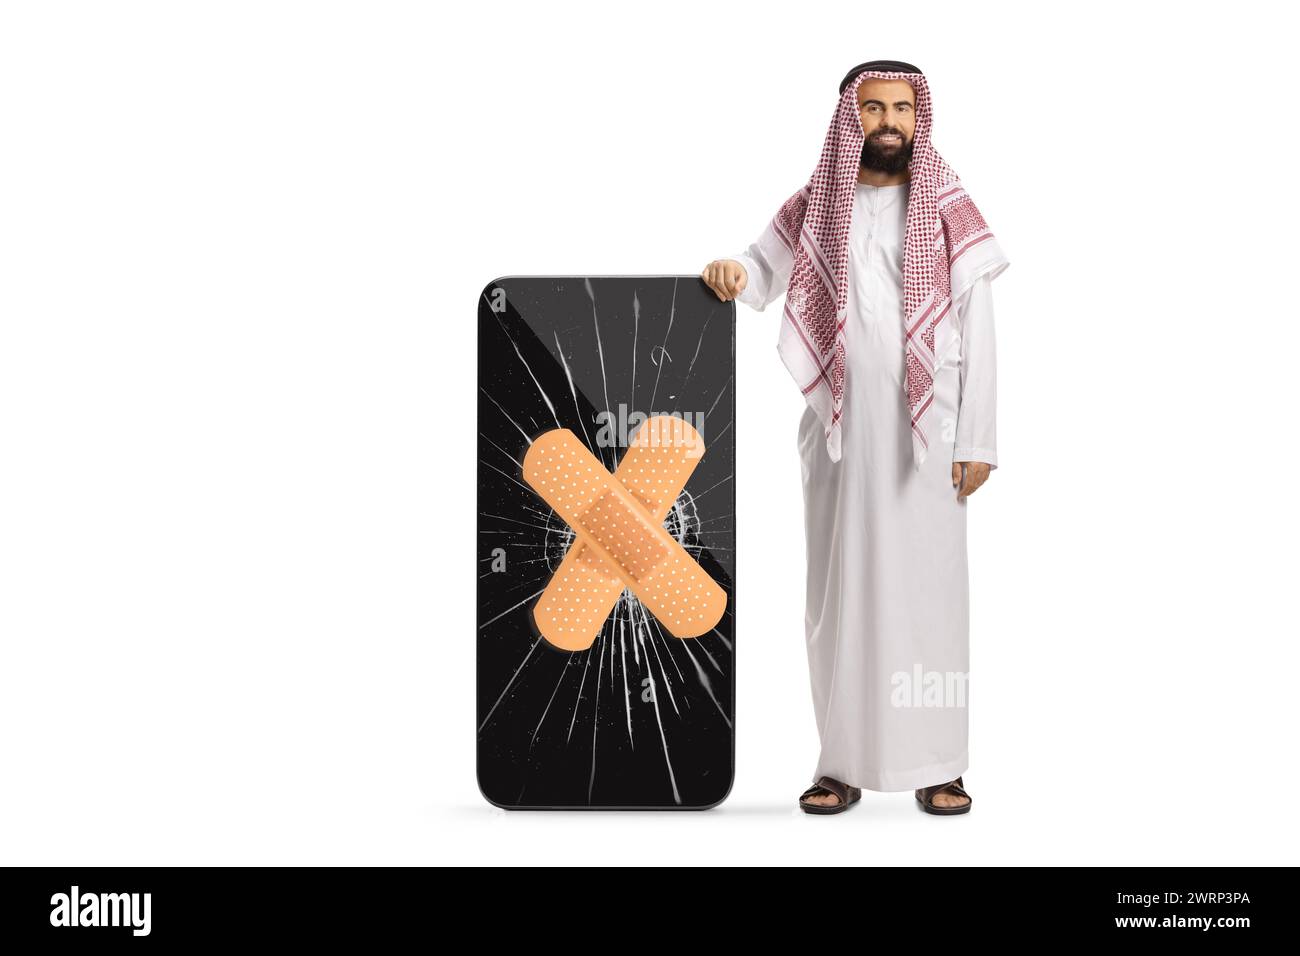 Uomo arabo saudita in abiti etnici in piedi accanto a un telefono cellulare con schermo incrinato isolato su sfondo bianco Foto Stock